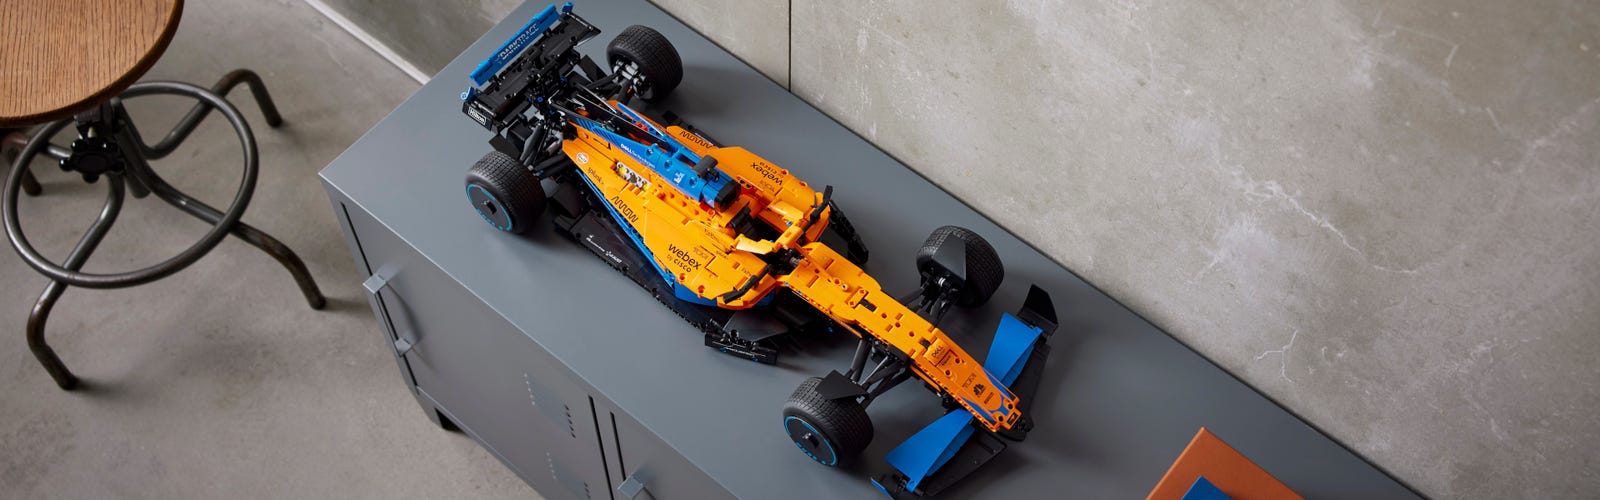 Lego Technic BMW i8s - Planète Jouets France - Boutique Jouets